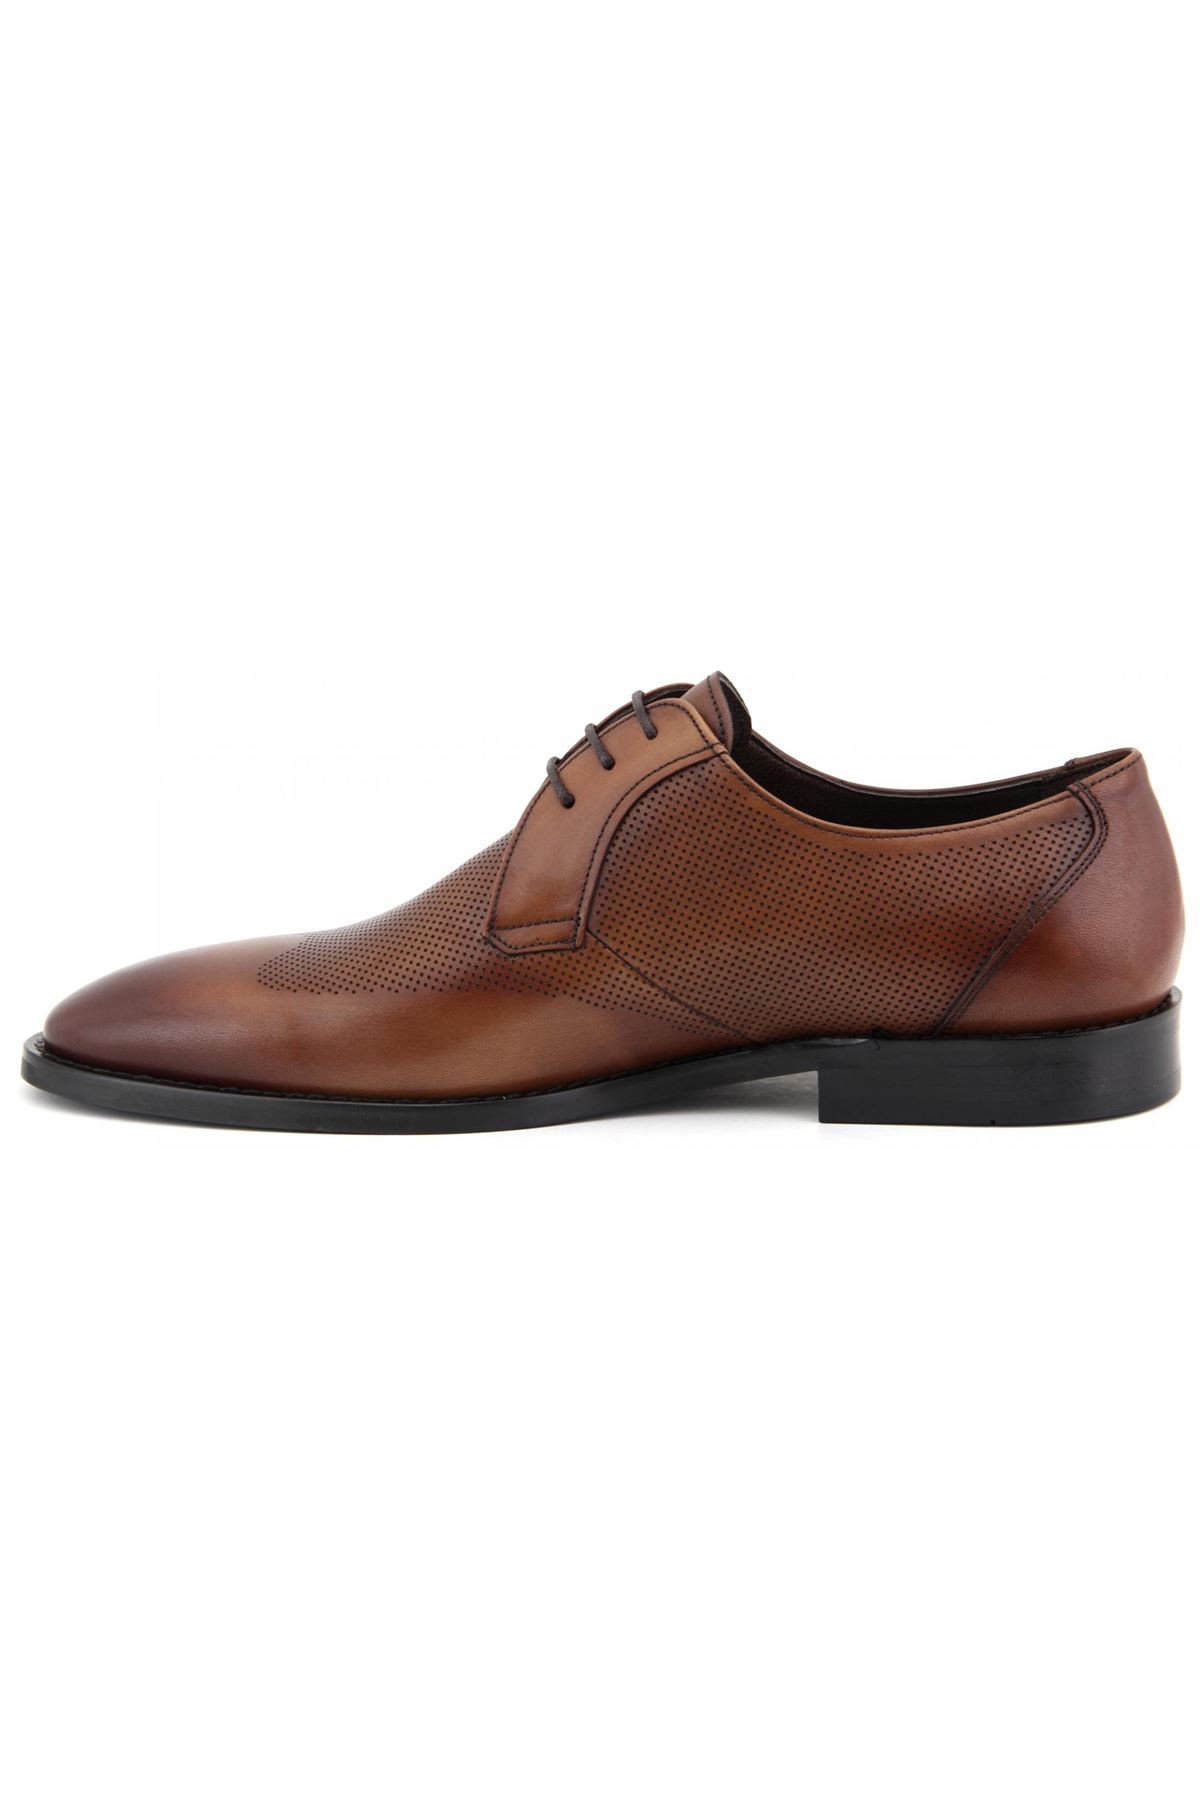 2725 Libero Klasik Erkek Ayakkabı - Taba